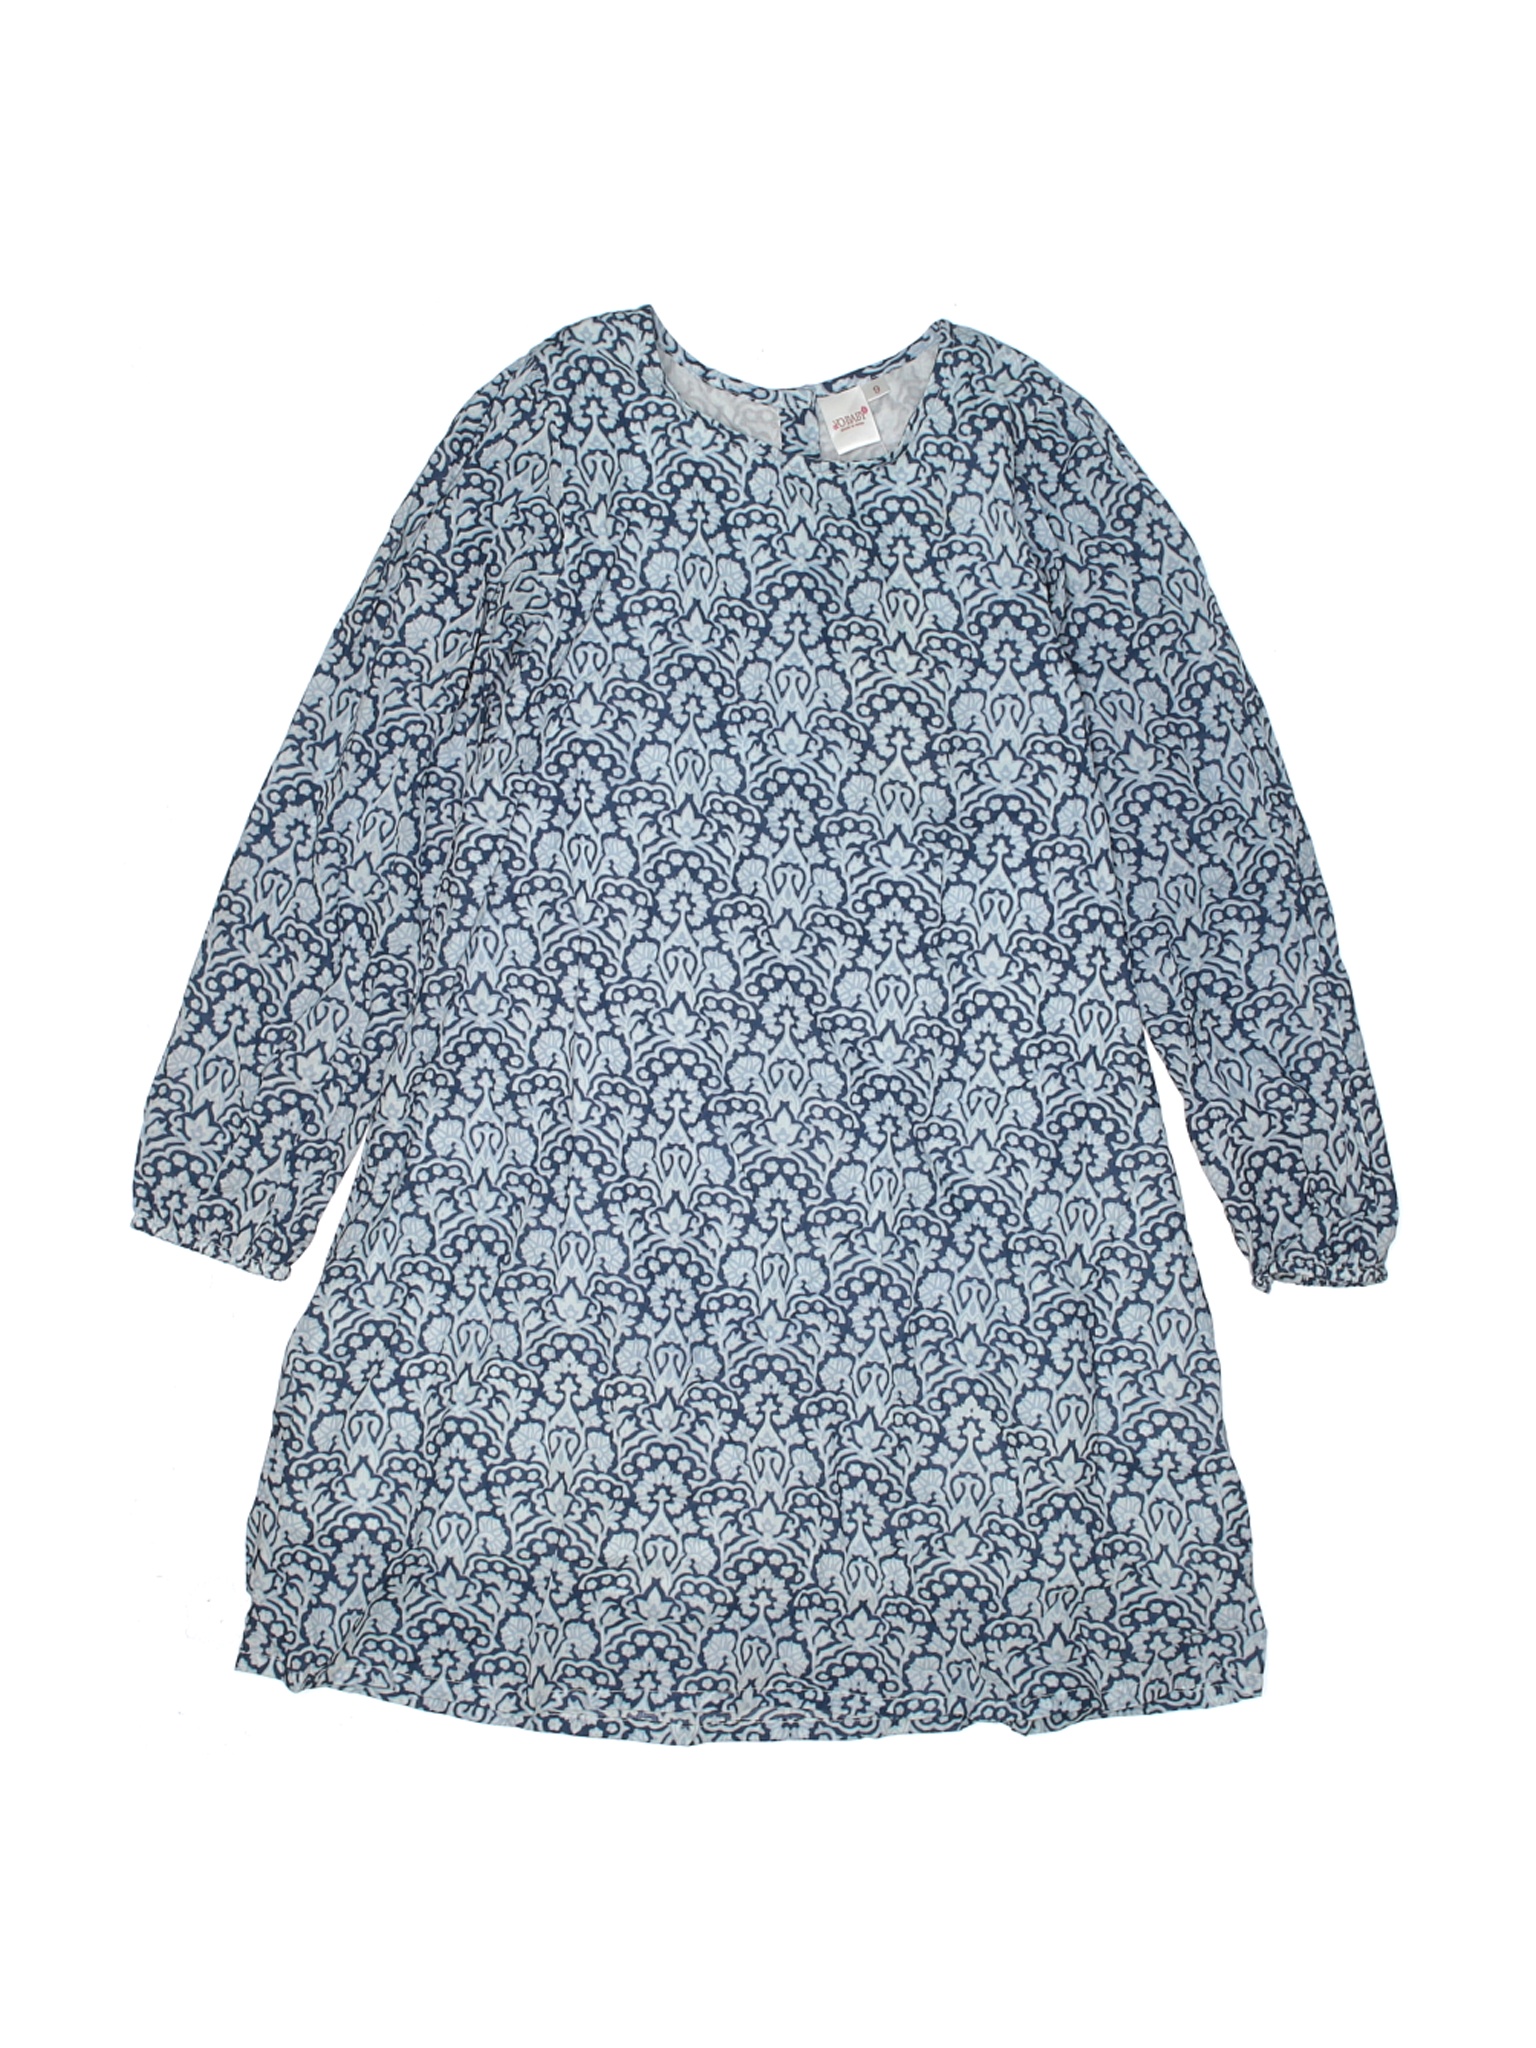 NWT Assorted Brands Girls Blue Dress 9 | eBay